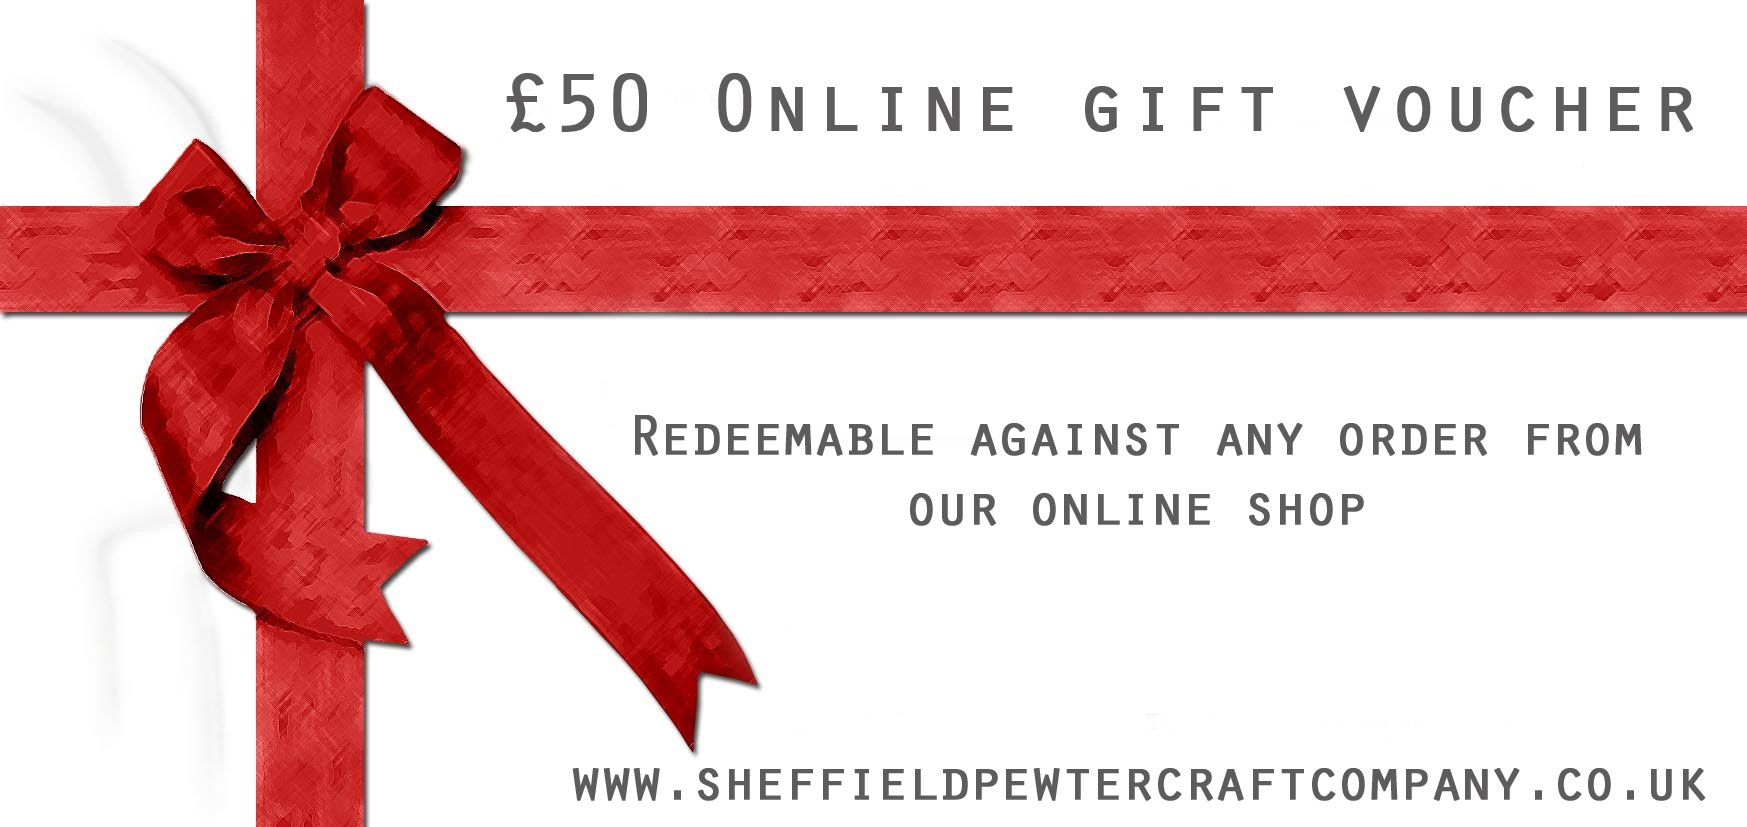 £50 Online Gift Voucher